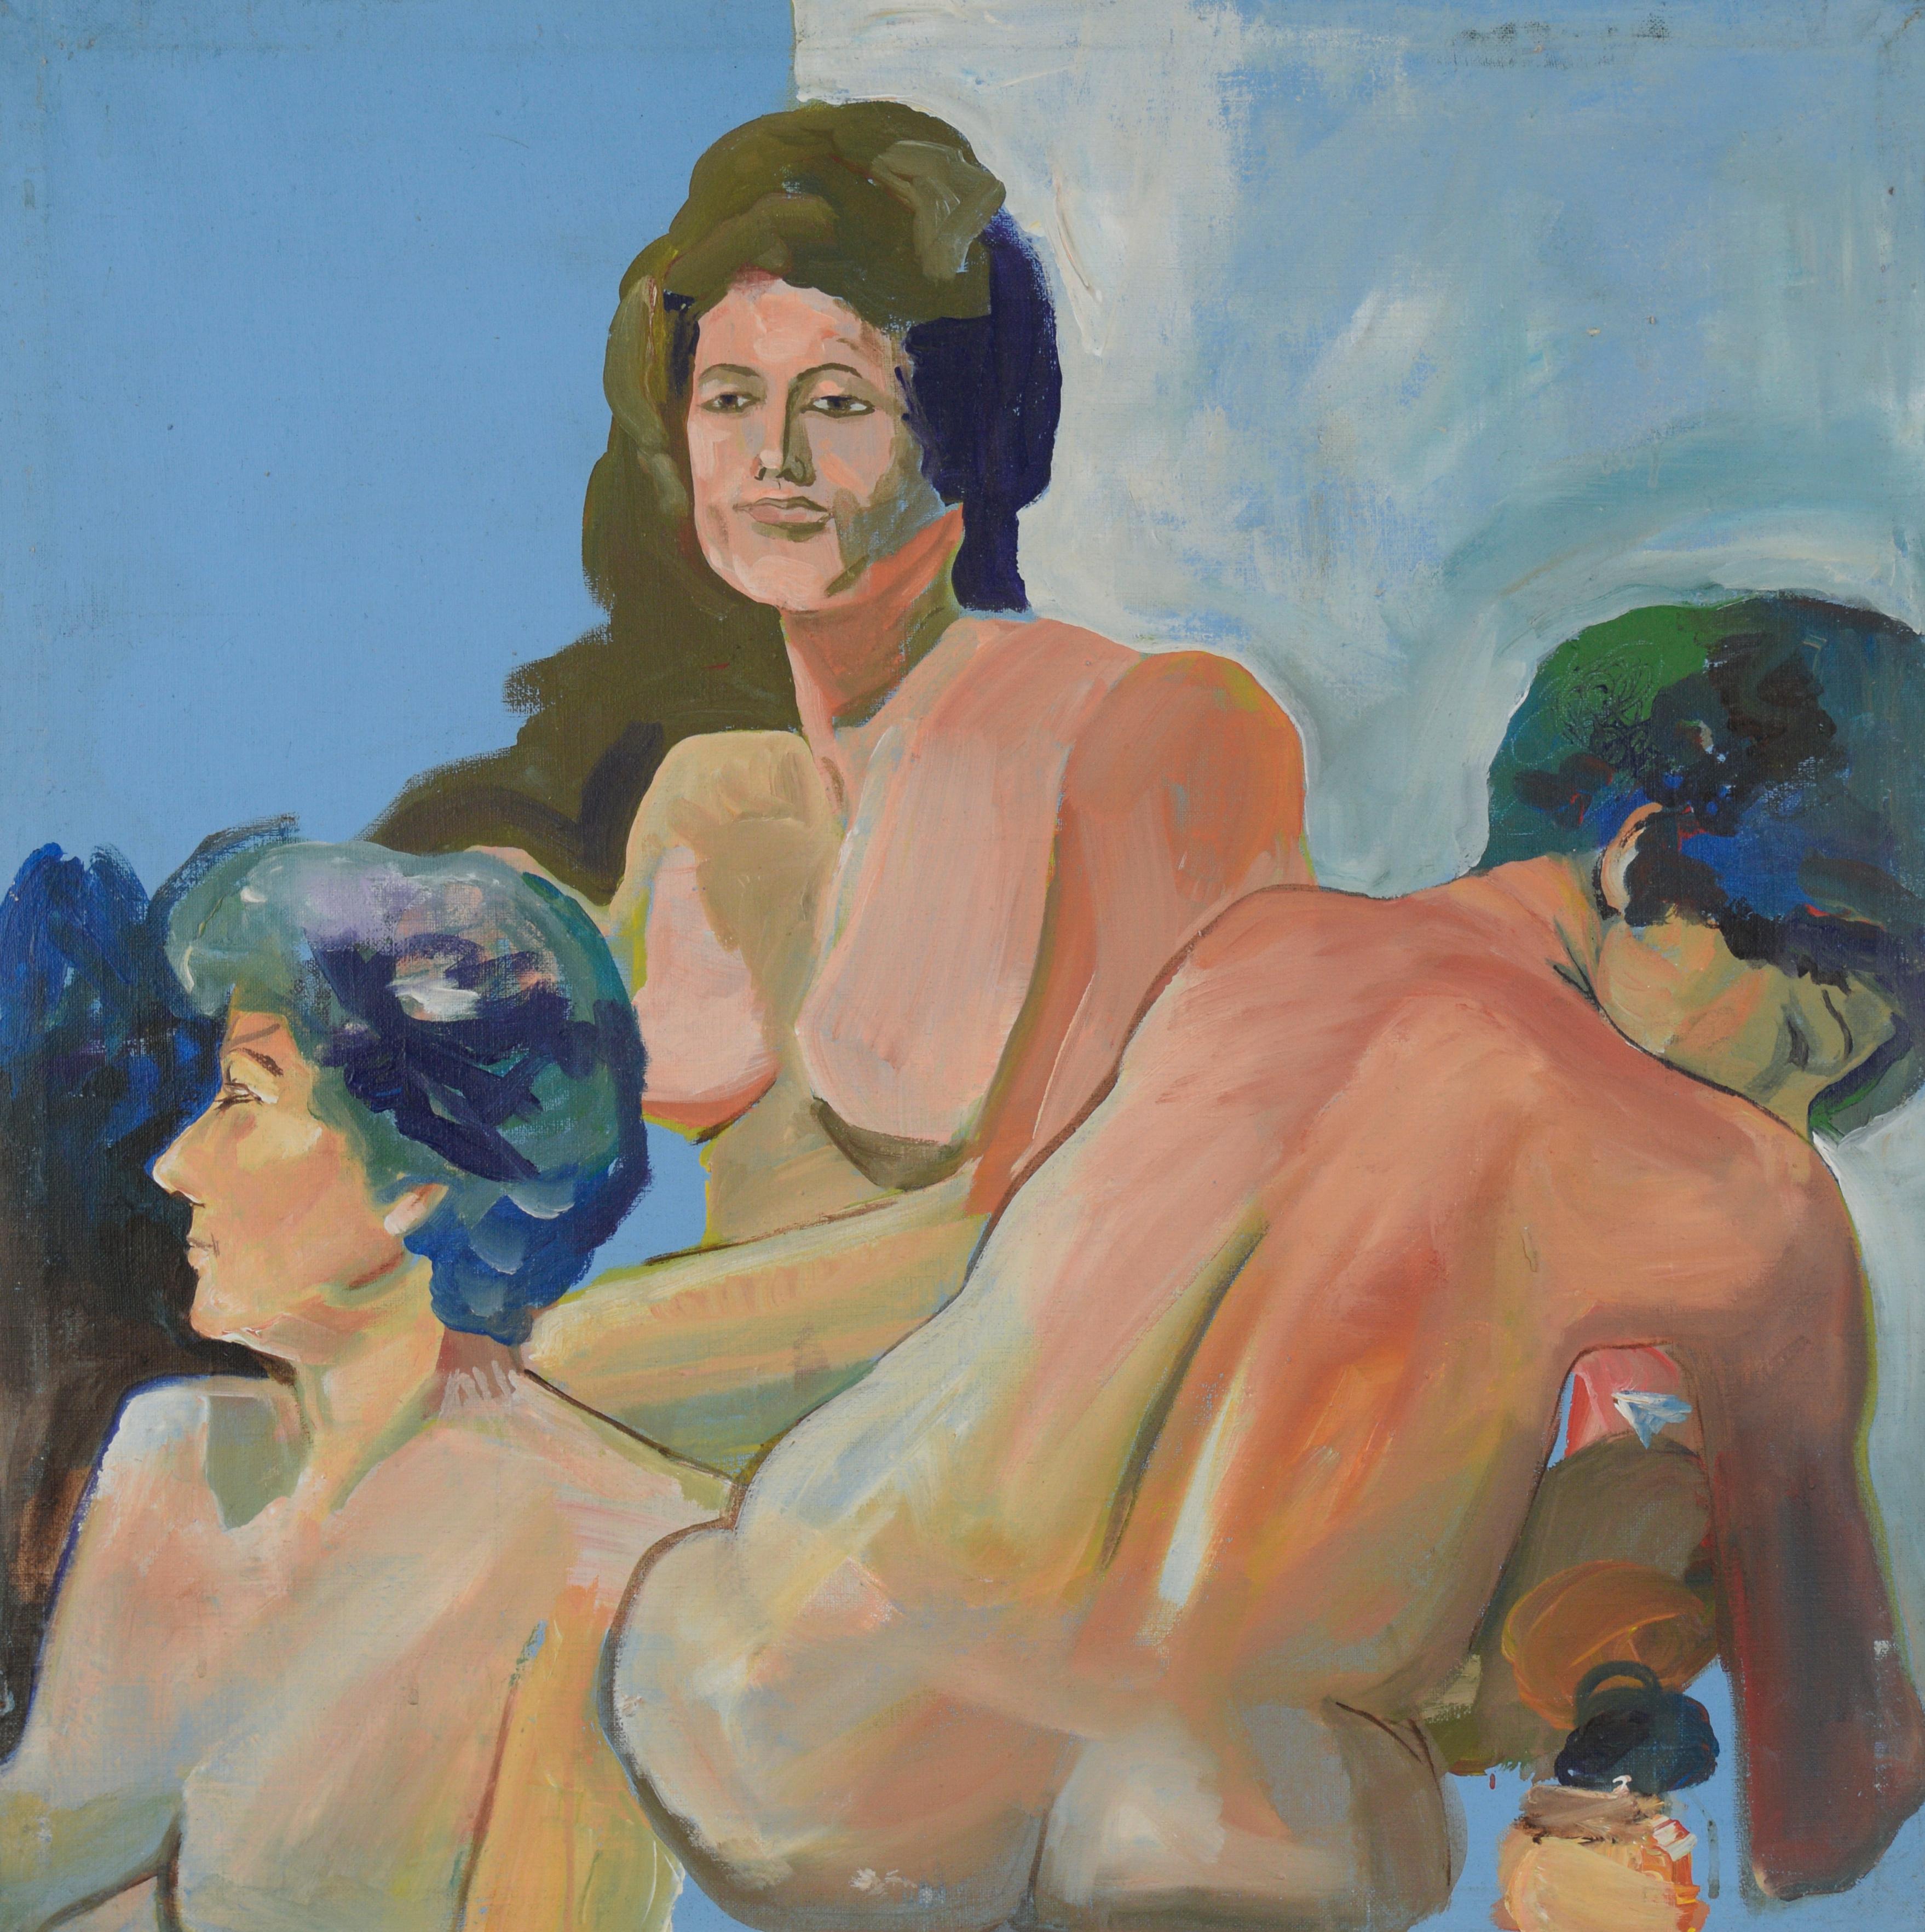 Drei Poses – Aktfigurenstudie von Patricia Gren Hayes

Drei nackte Frauen, die als Modelle in einem Kunstkurs dienen und unterschiedliche Ausdrucksformen der amerikanischen Malerin Patricia Gren Hayes (Kanadierin/Amerikanerin, geb. 1932) zeigen. Ein